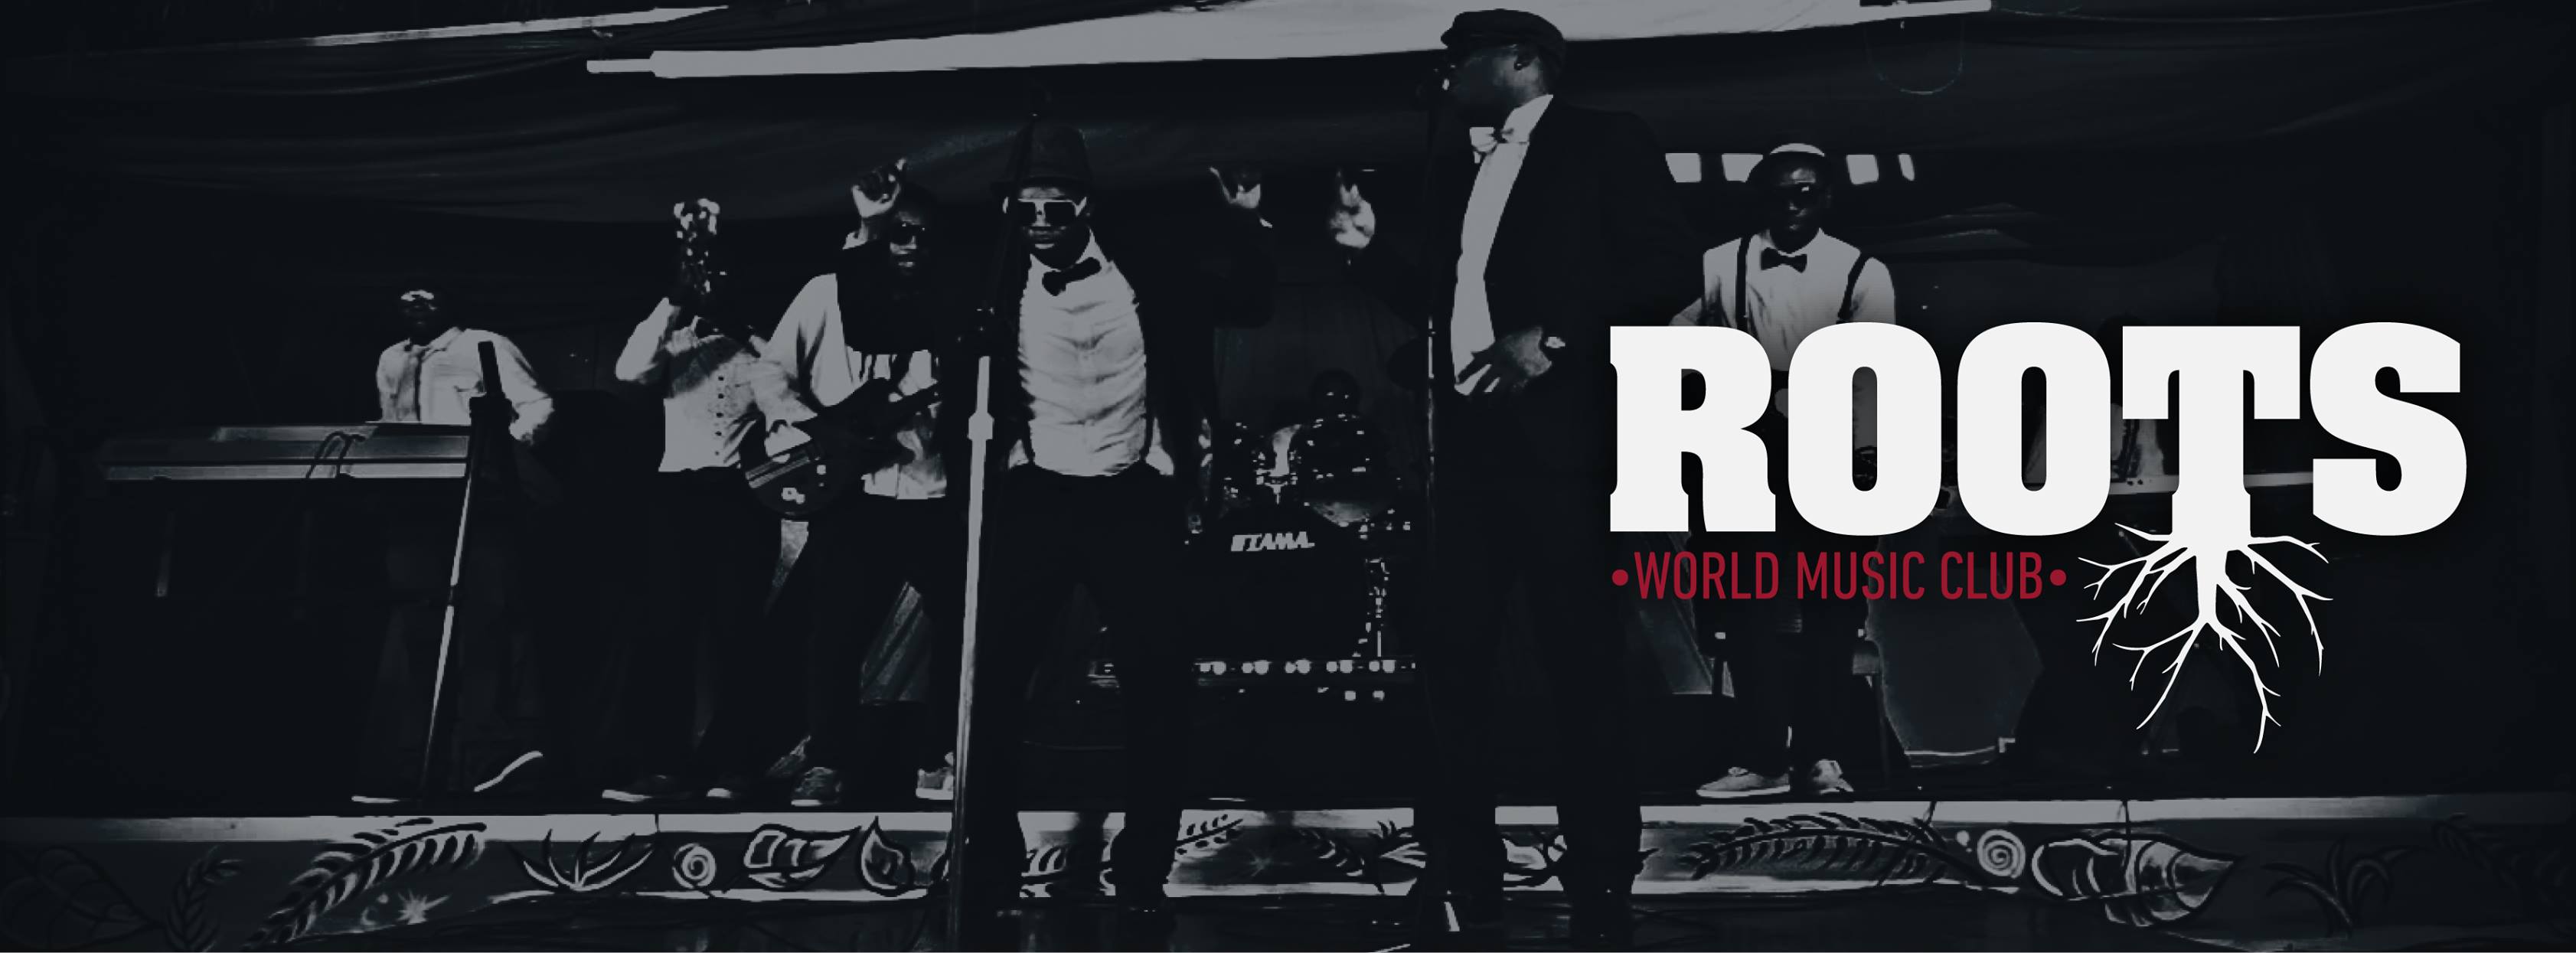 Roots, un nuevo club con raíces reggae y rap en Murcia